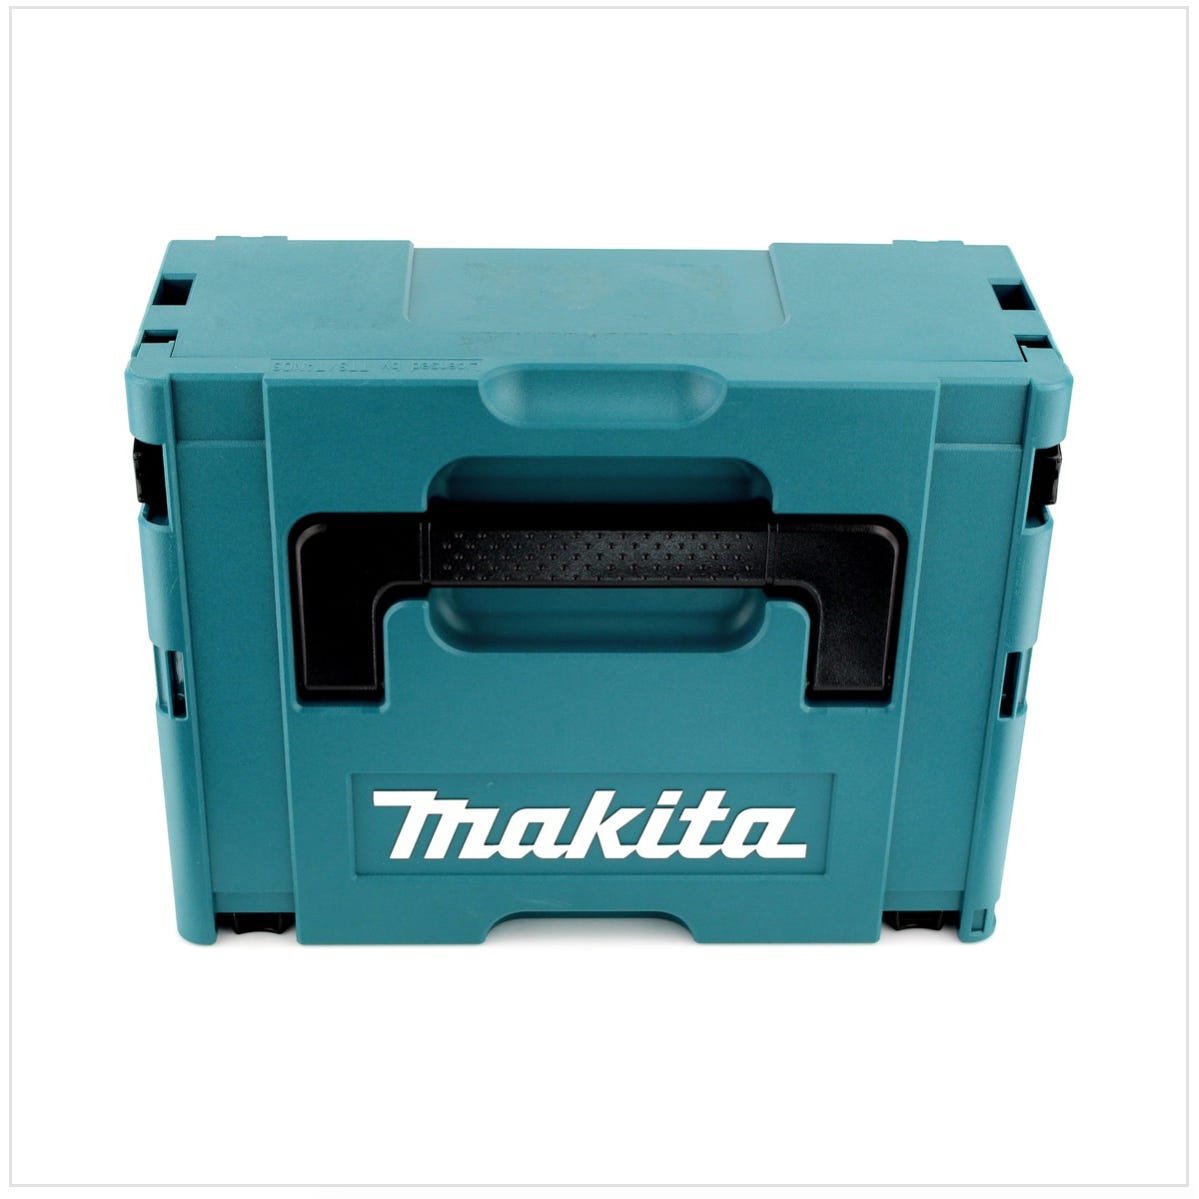 Makita DHP 483 RMJ 18 V Li-Ion Brushless Perceuse visseuse à percussion sans fil avec boîtier Makpac + 2x Batteries BL 1840 4,0 Ah + Chargeur DC18RC 2